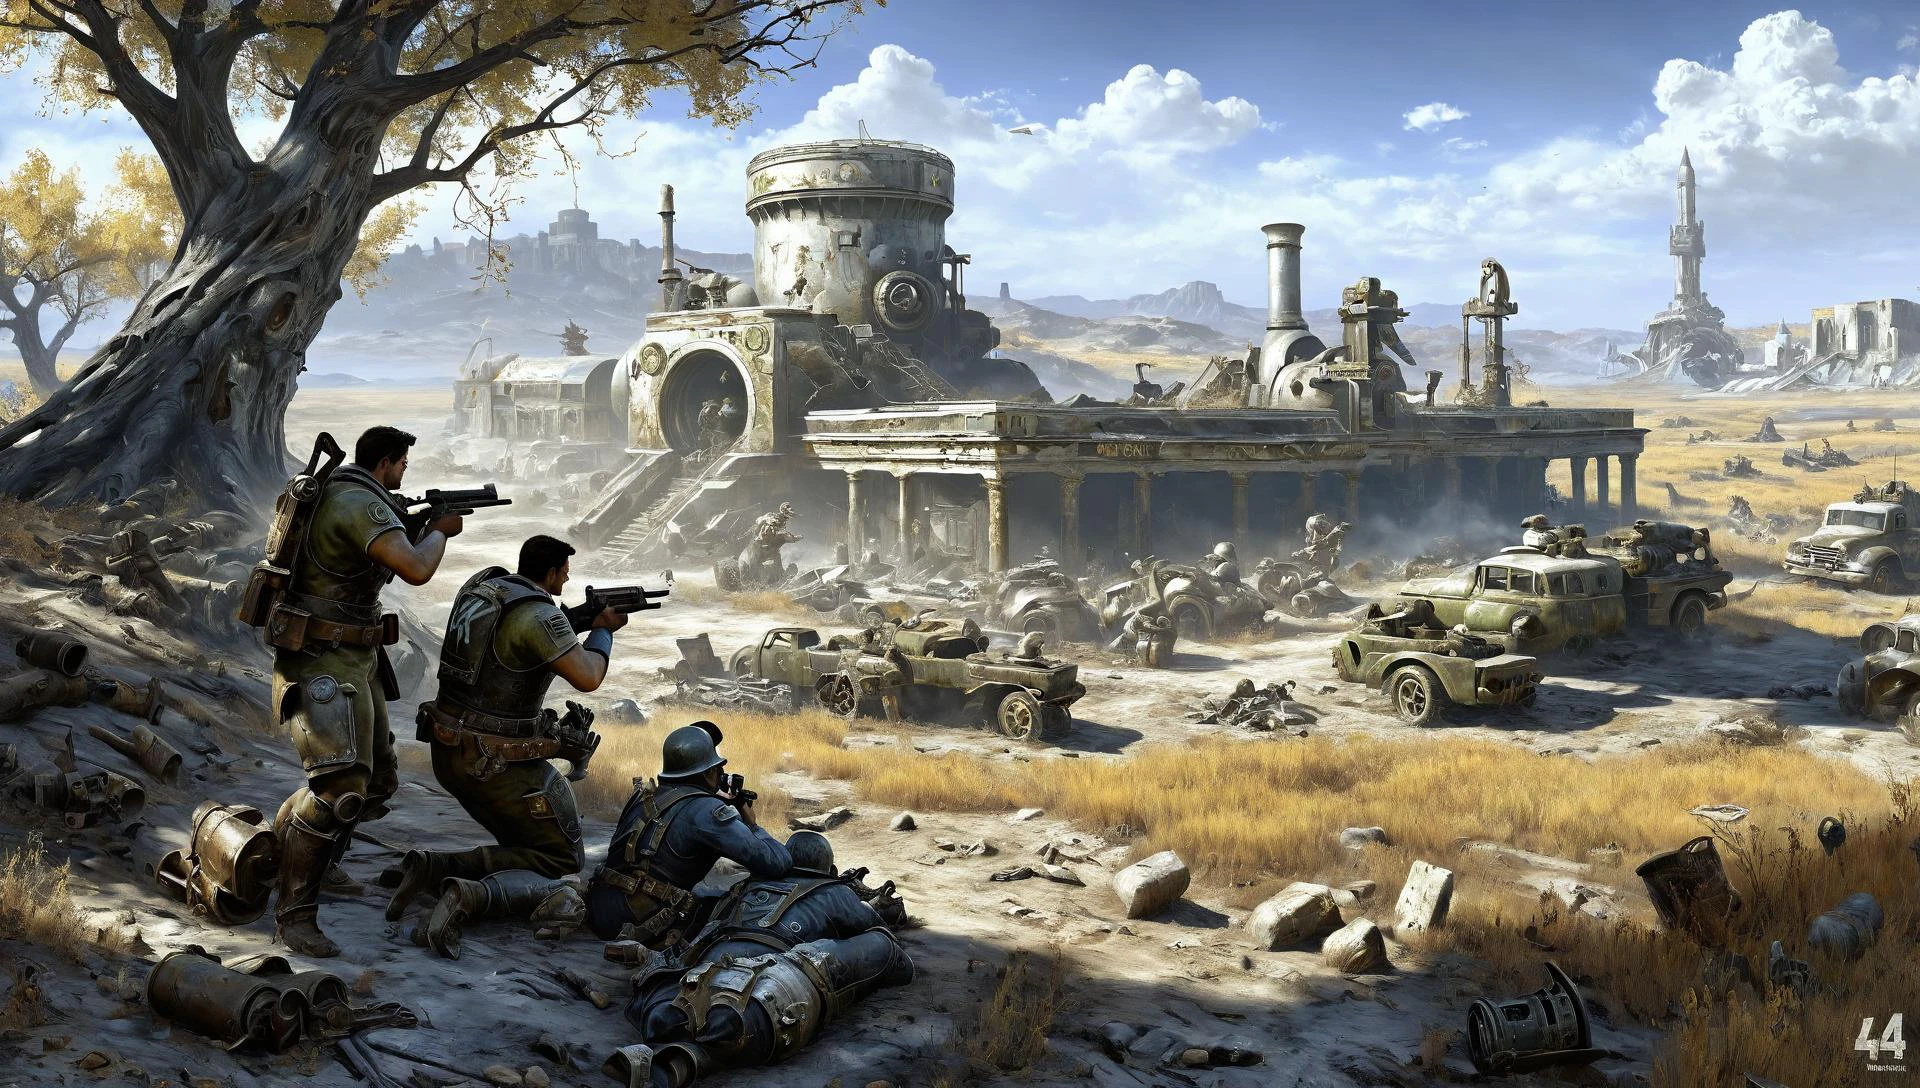 미국에서 자세히 설명된 Fallout4 전쟁 그림 , Henryk Siemiradzki의 고대 학술 신화 스타일, 